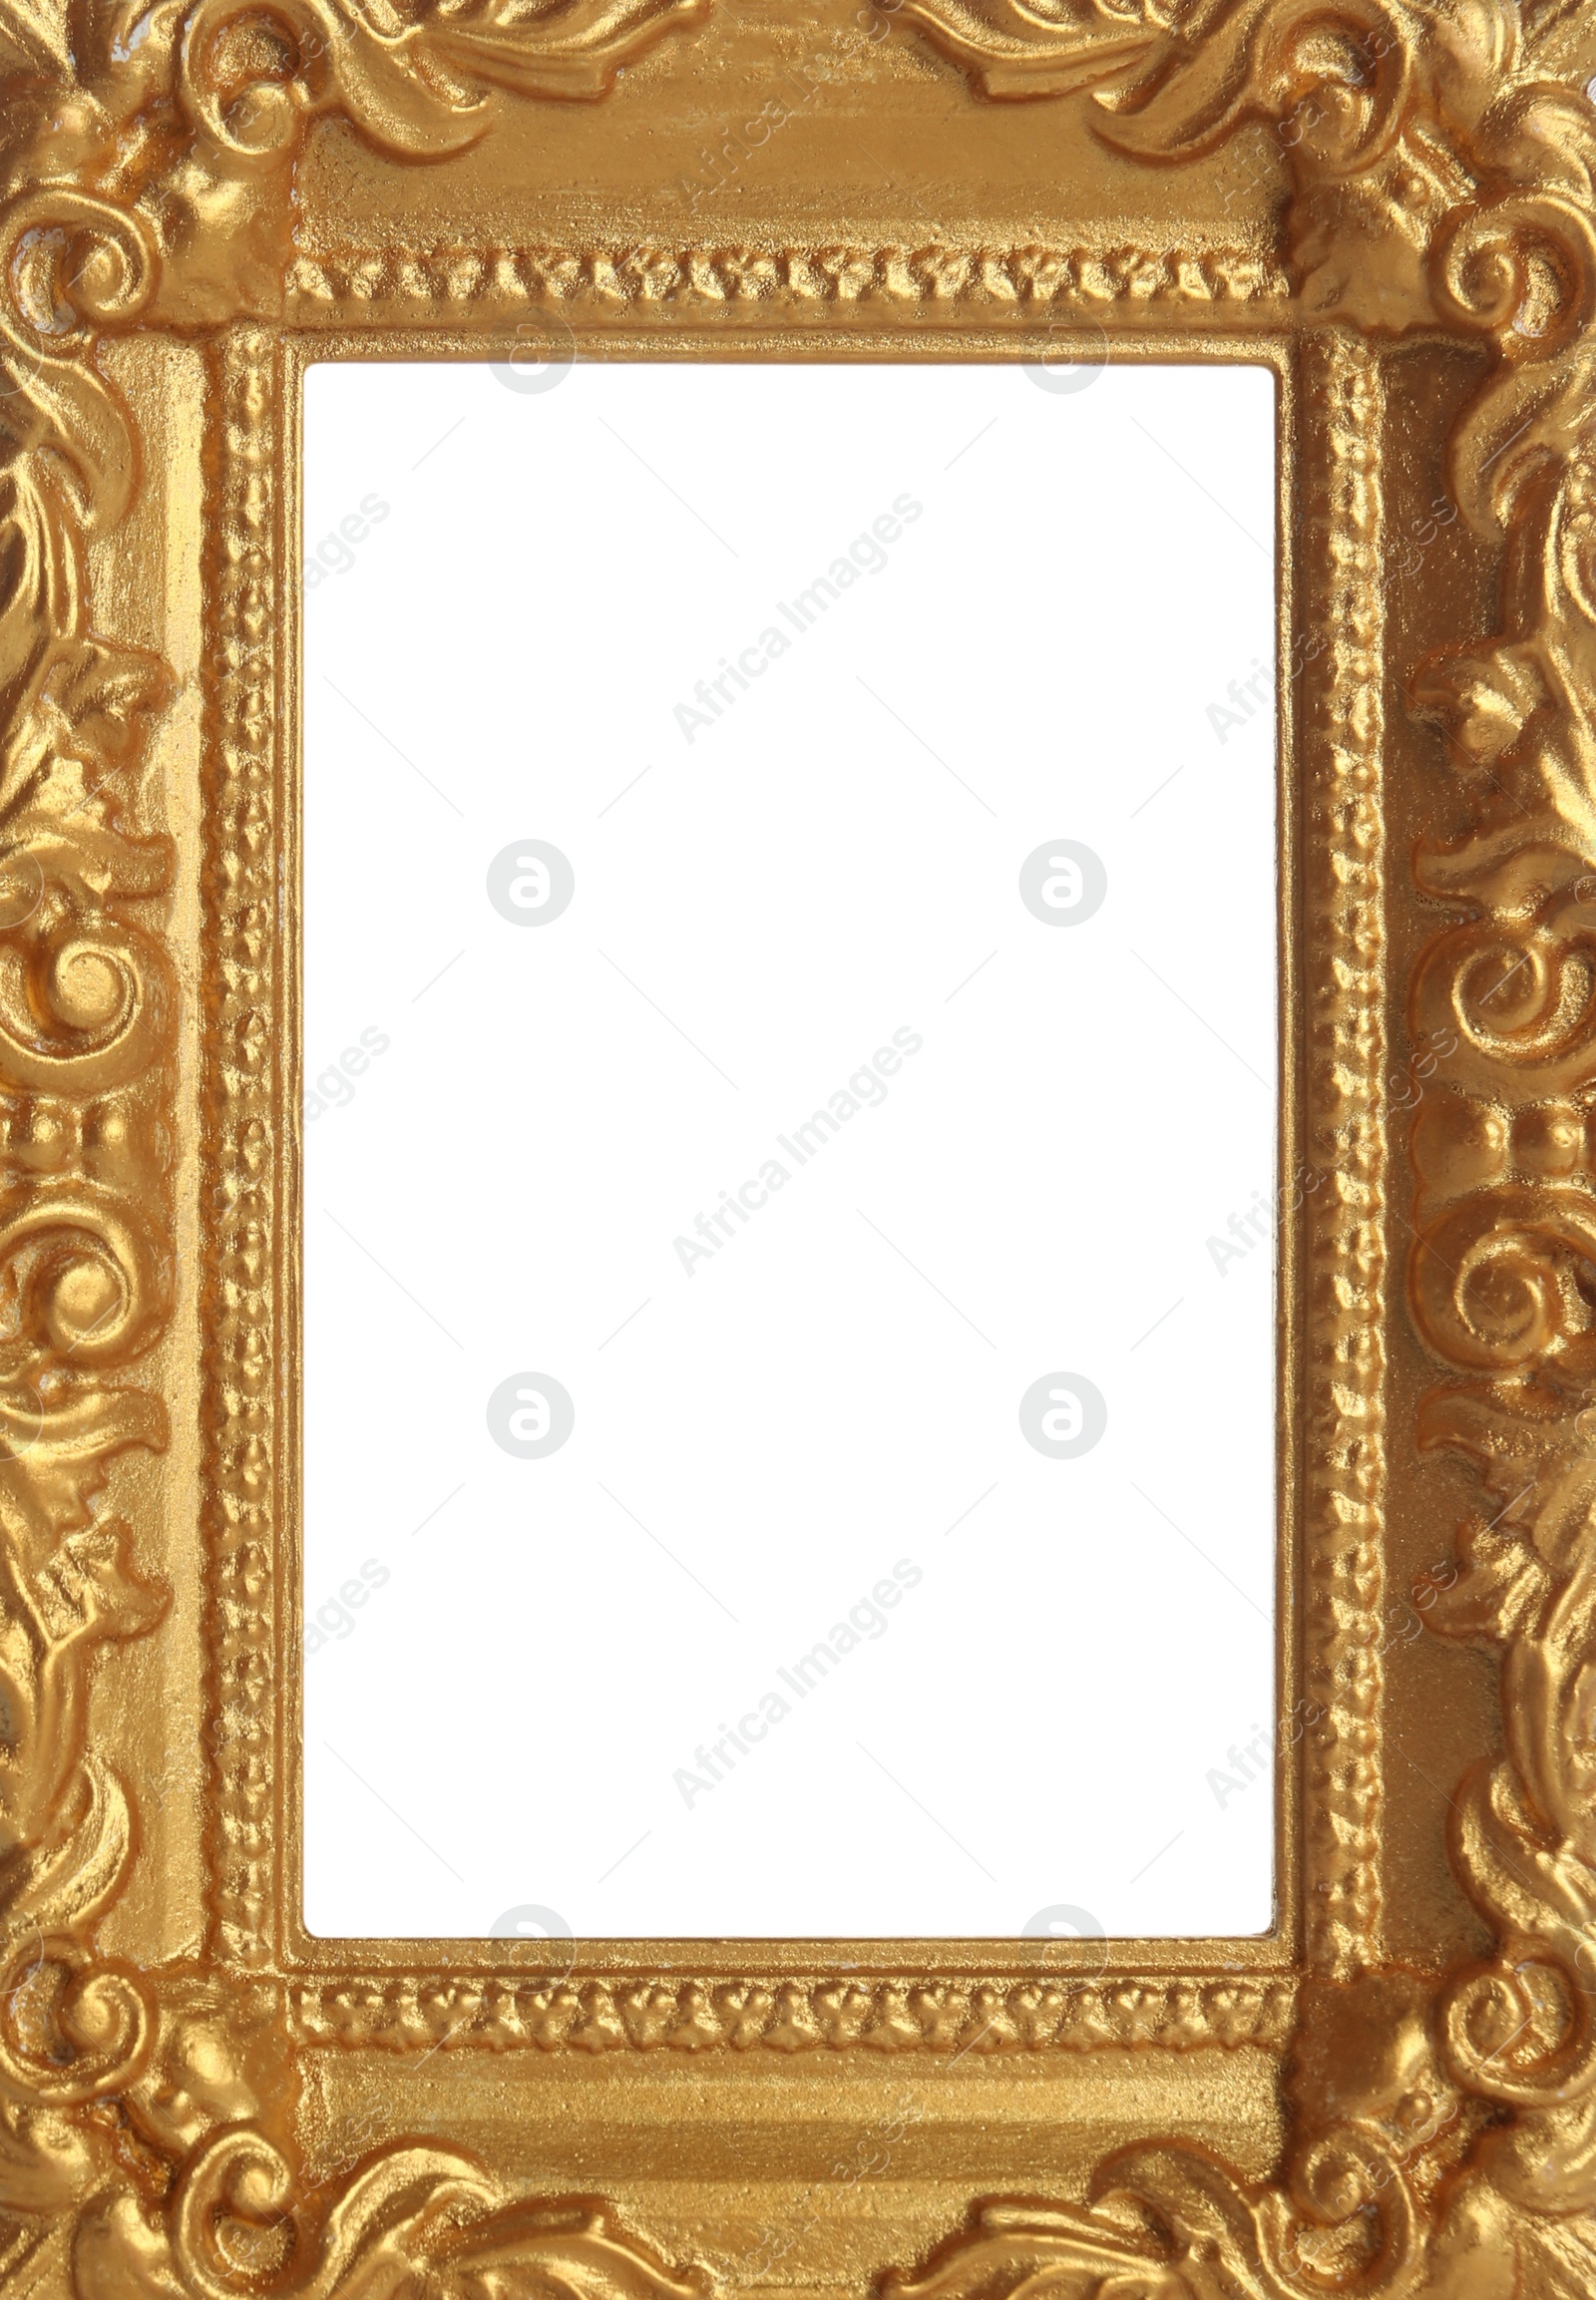 Image of Golden vintage frame with blank white background. Mockup for design